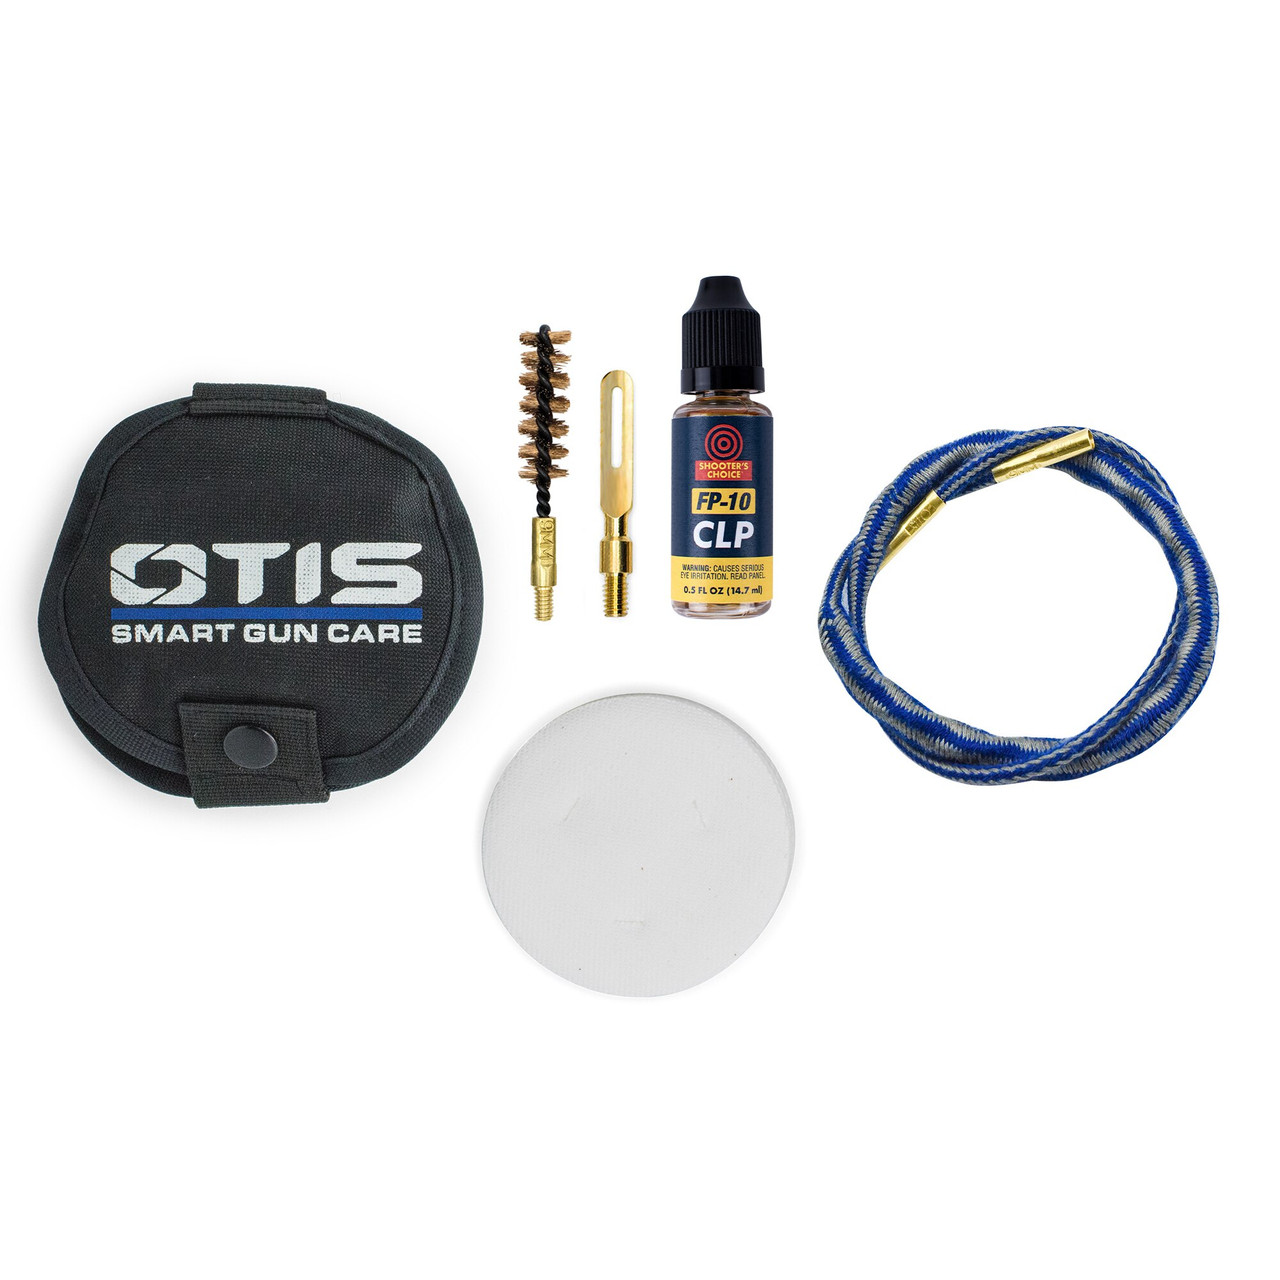 11x17 Gun Cleaning Mat - Otis Technology